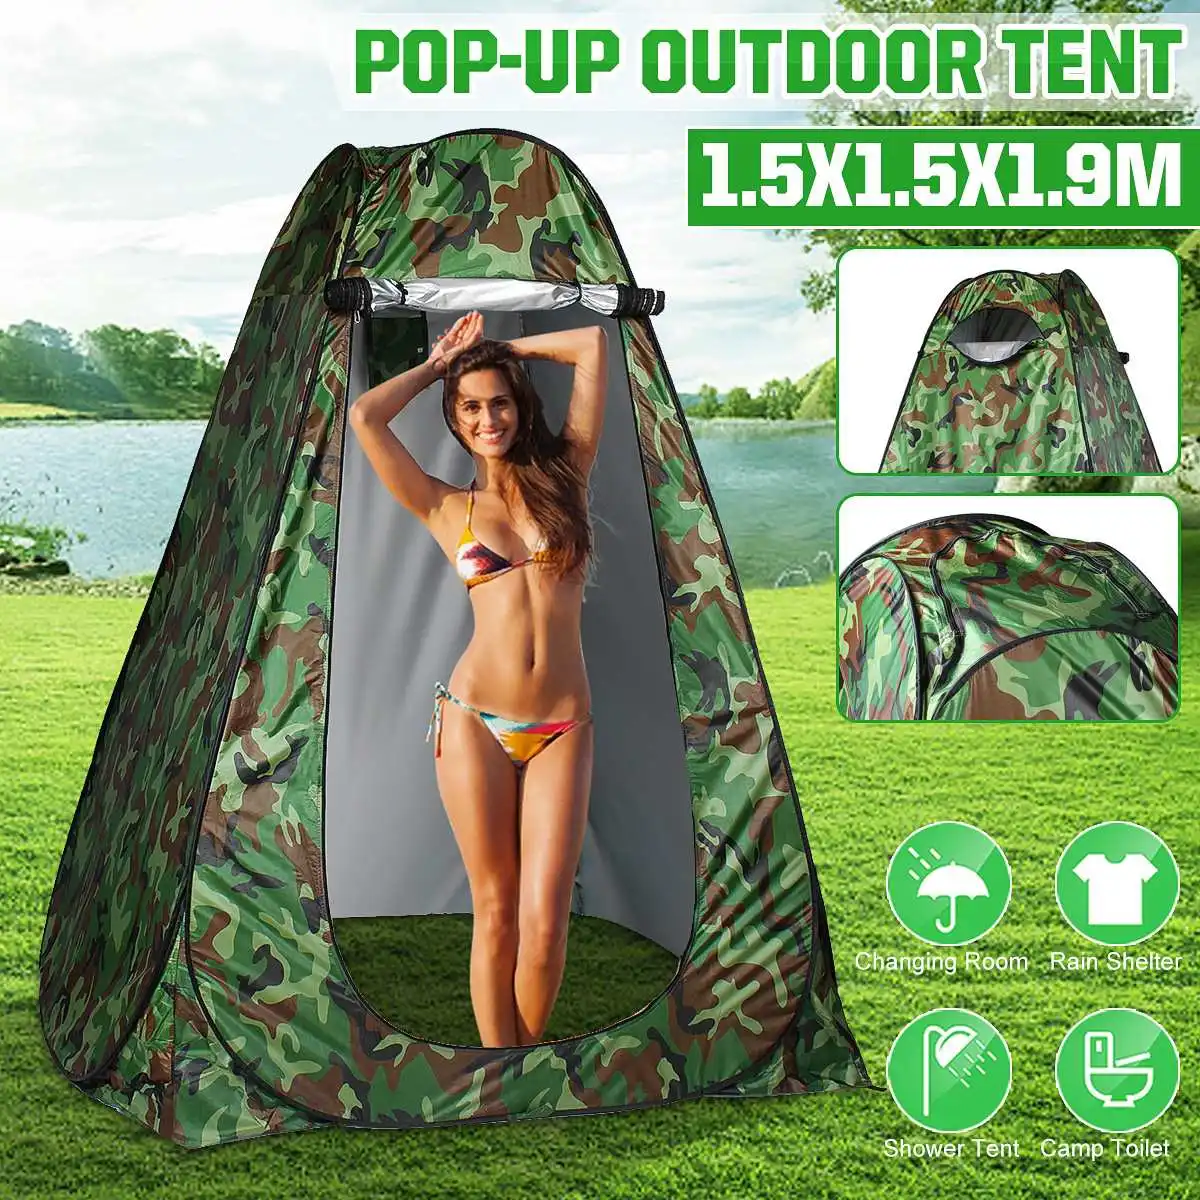 1,5x1,5x1,9 М Автоматическая Открытая тканевая палатка для переодевания для купания, защита от ультрафиолета, водонепроницаемая вентиляция, одиночная палатка для кемпинга на открытом воздухе